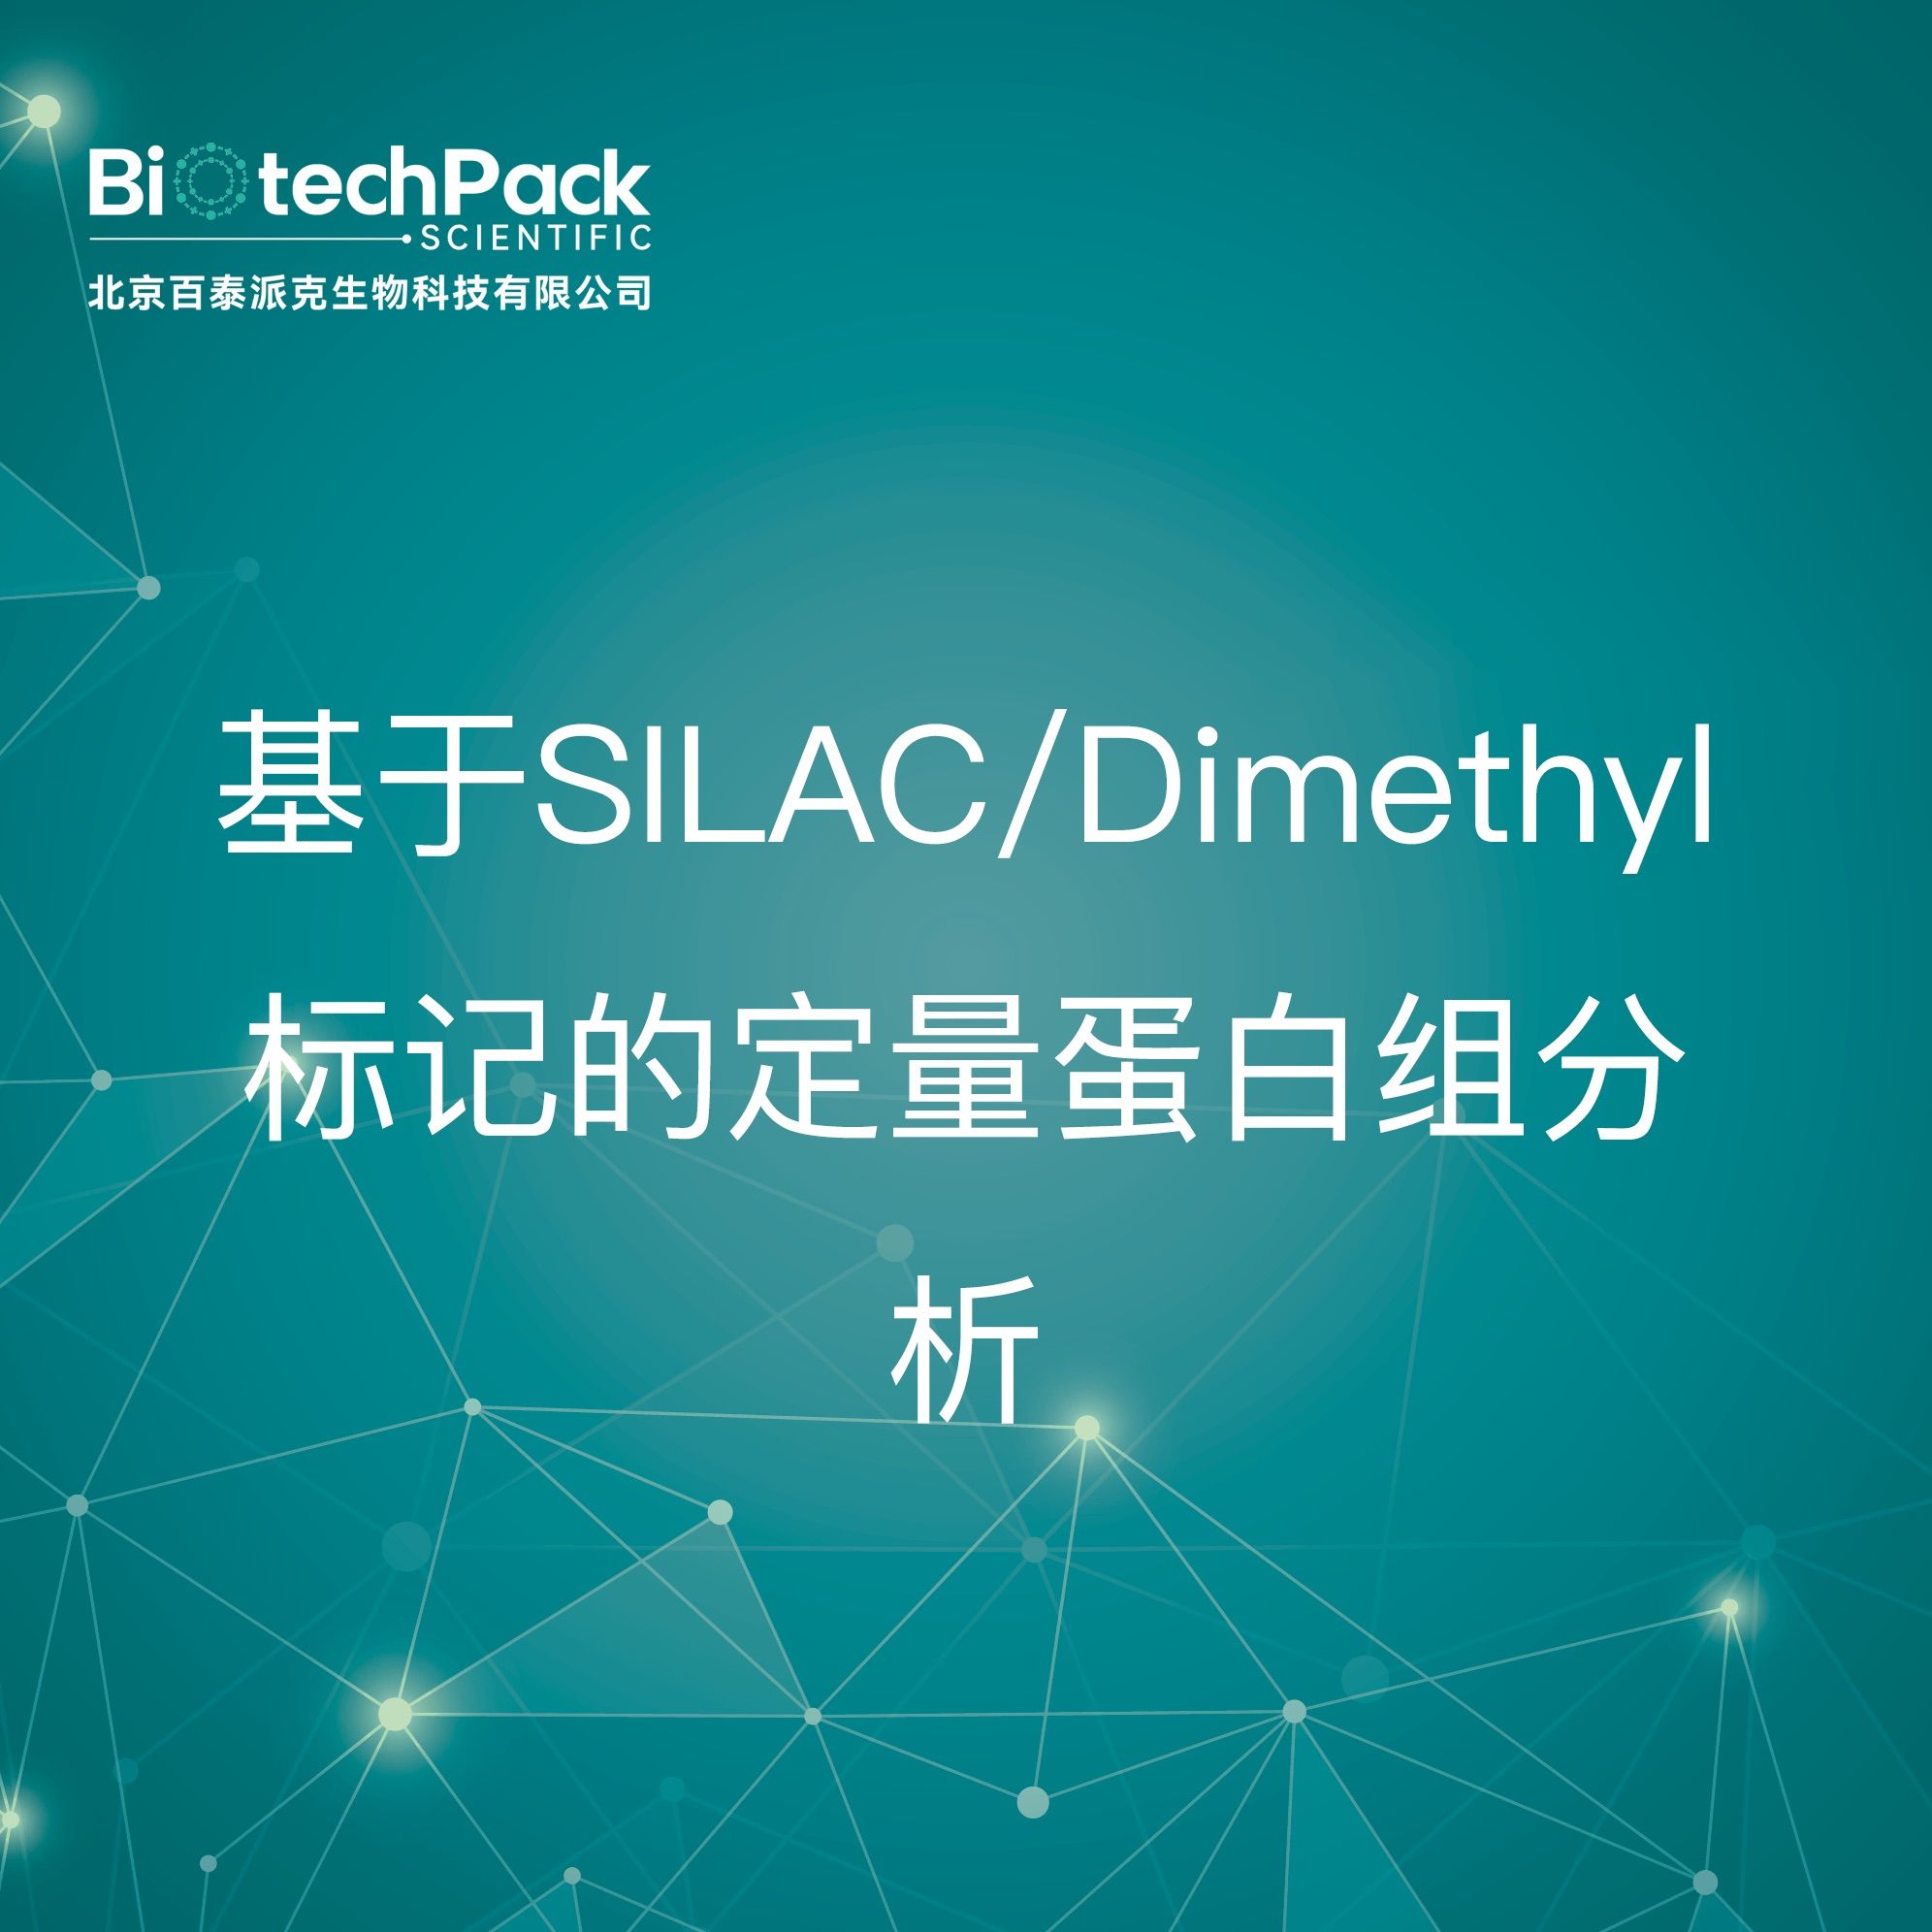 基于SILAC/Dimethyl标记的定量蛋白组分析检测技术服务